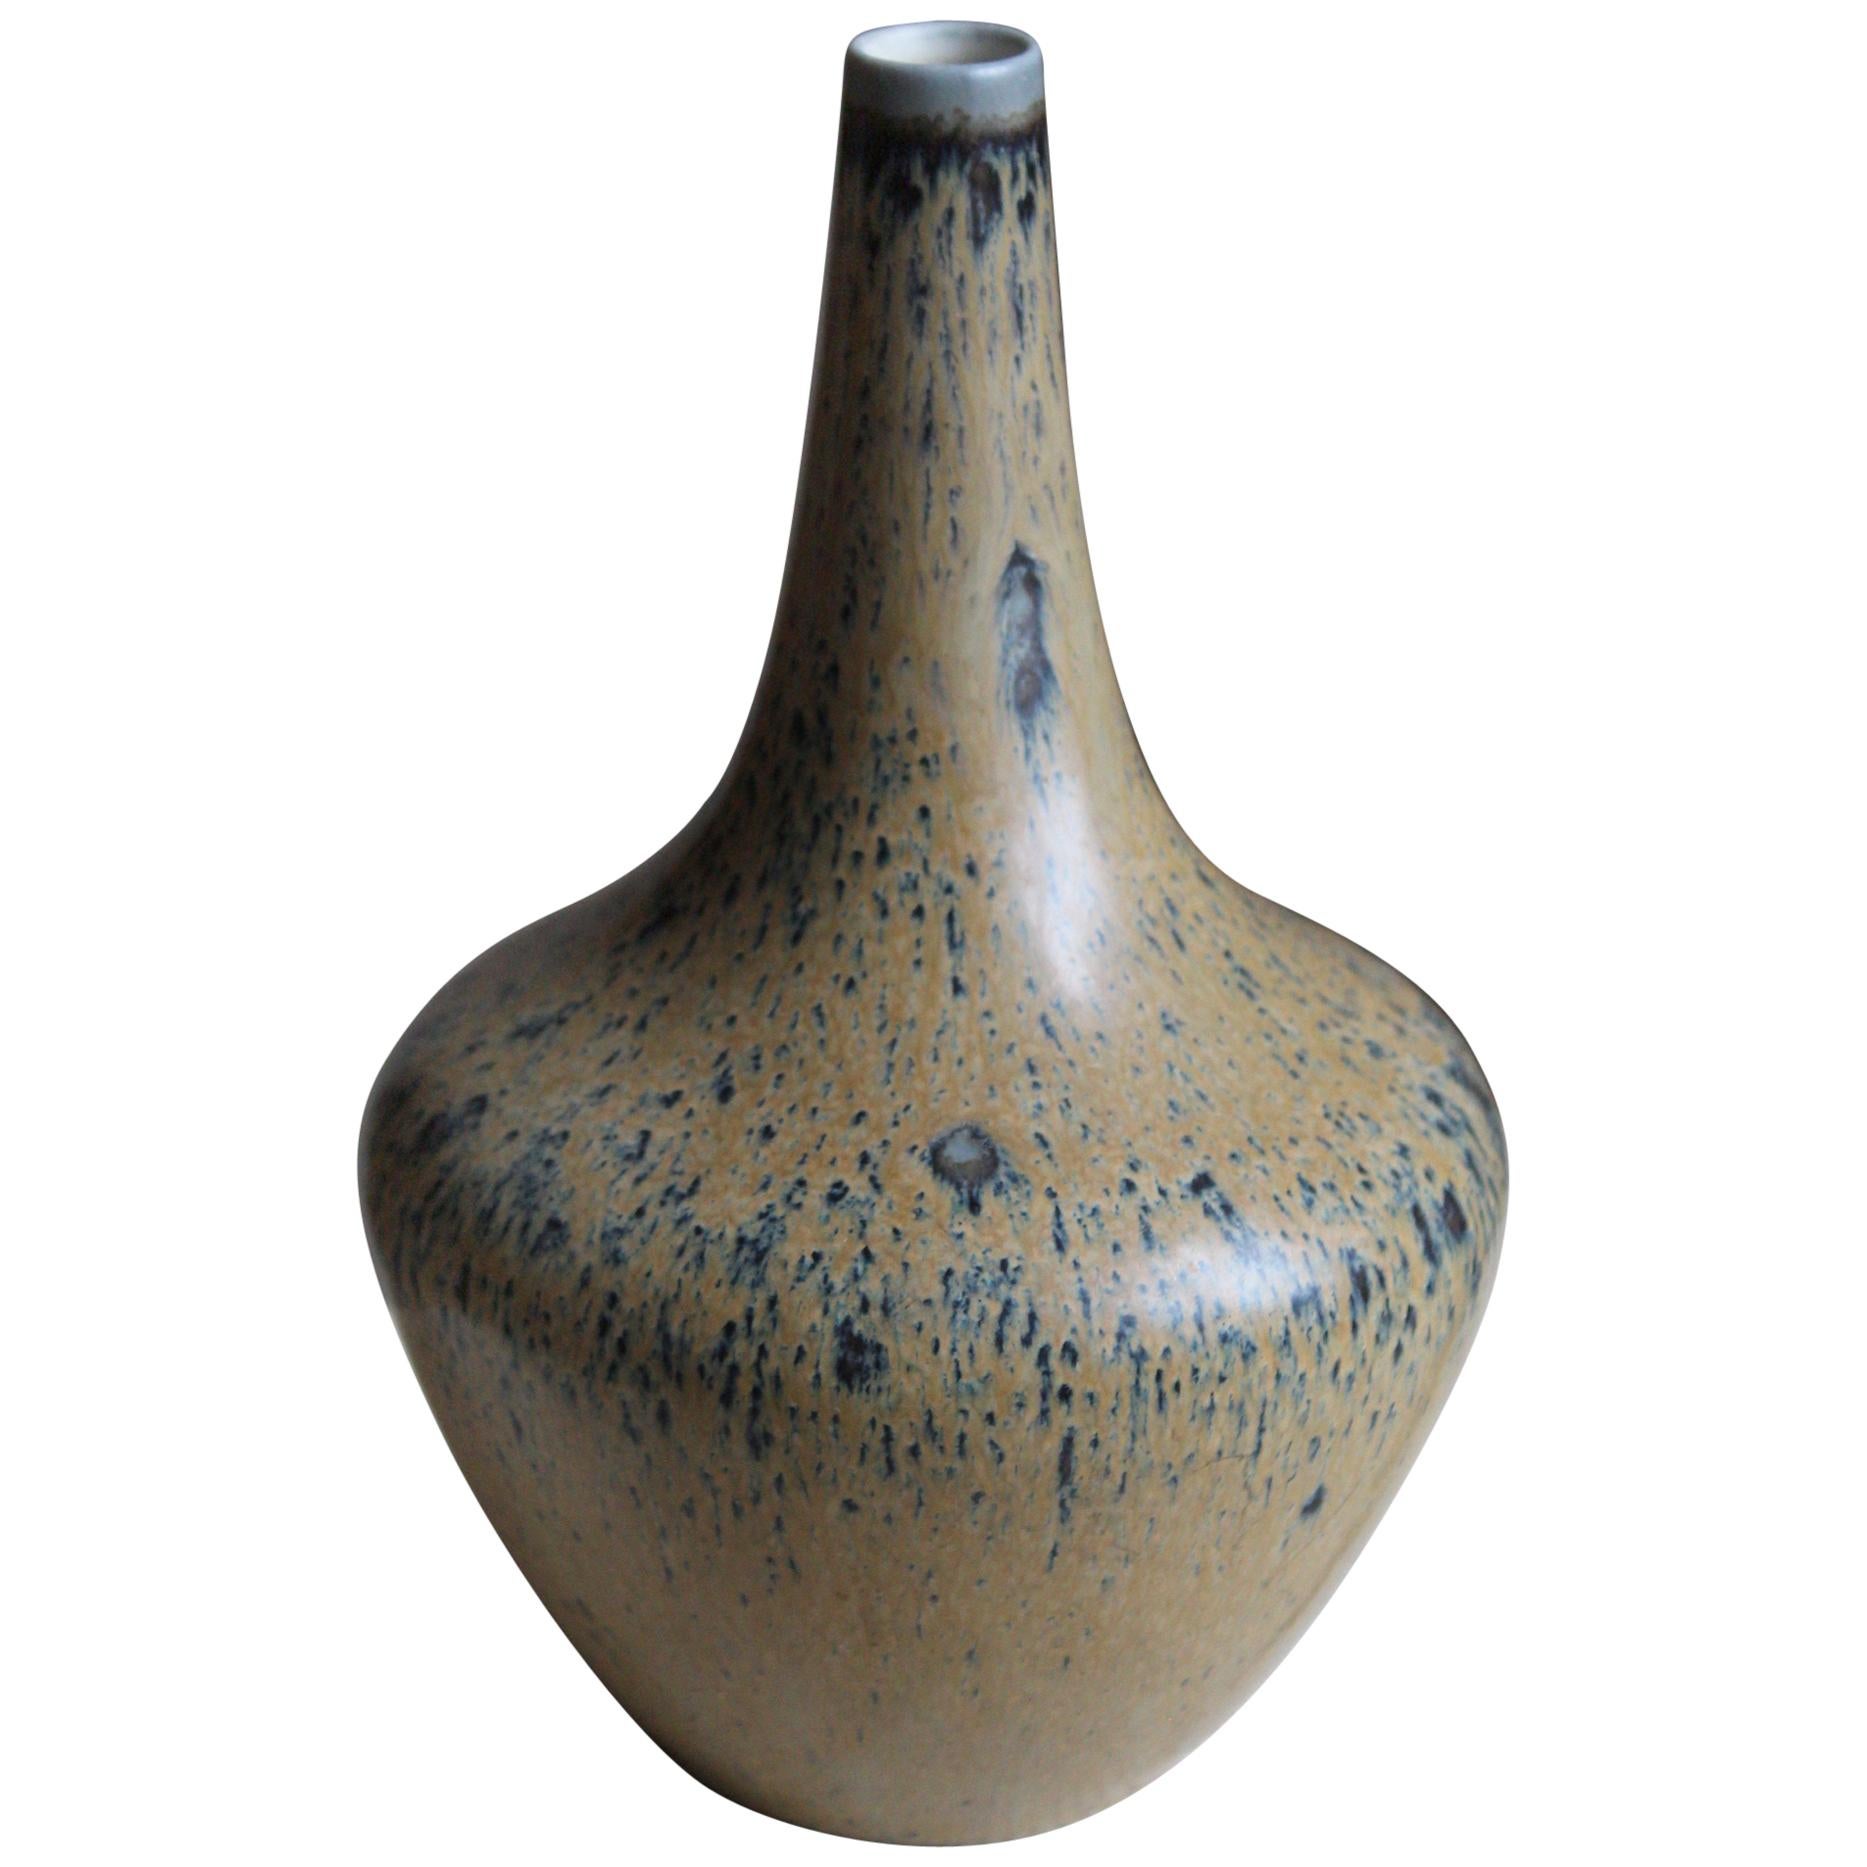 Gunnar Nylund, Vase or Vessel, Glazed Stoneware, Rörstand, Sweden, 1950s